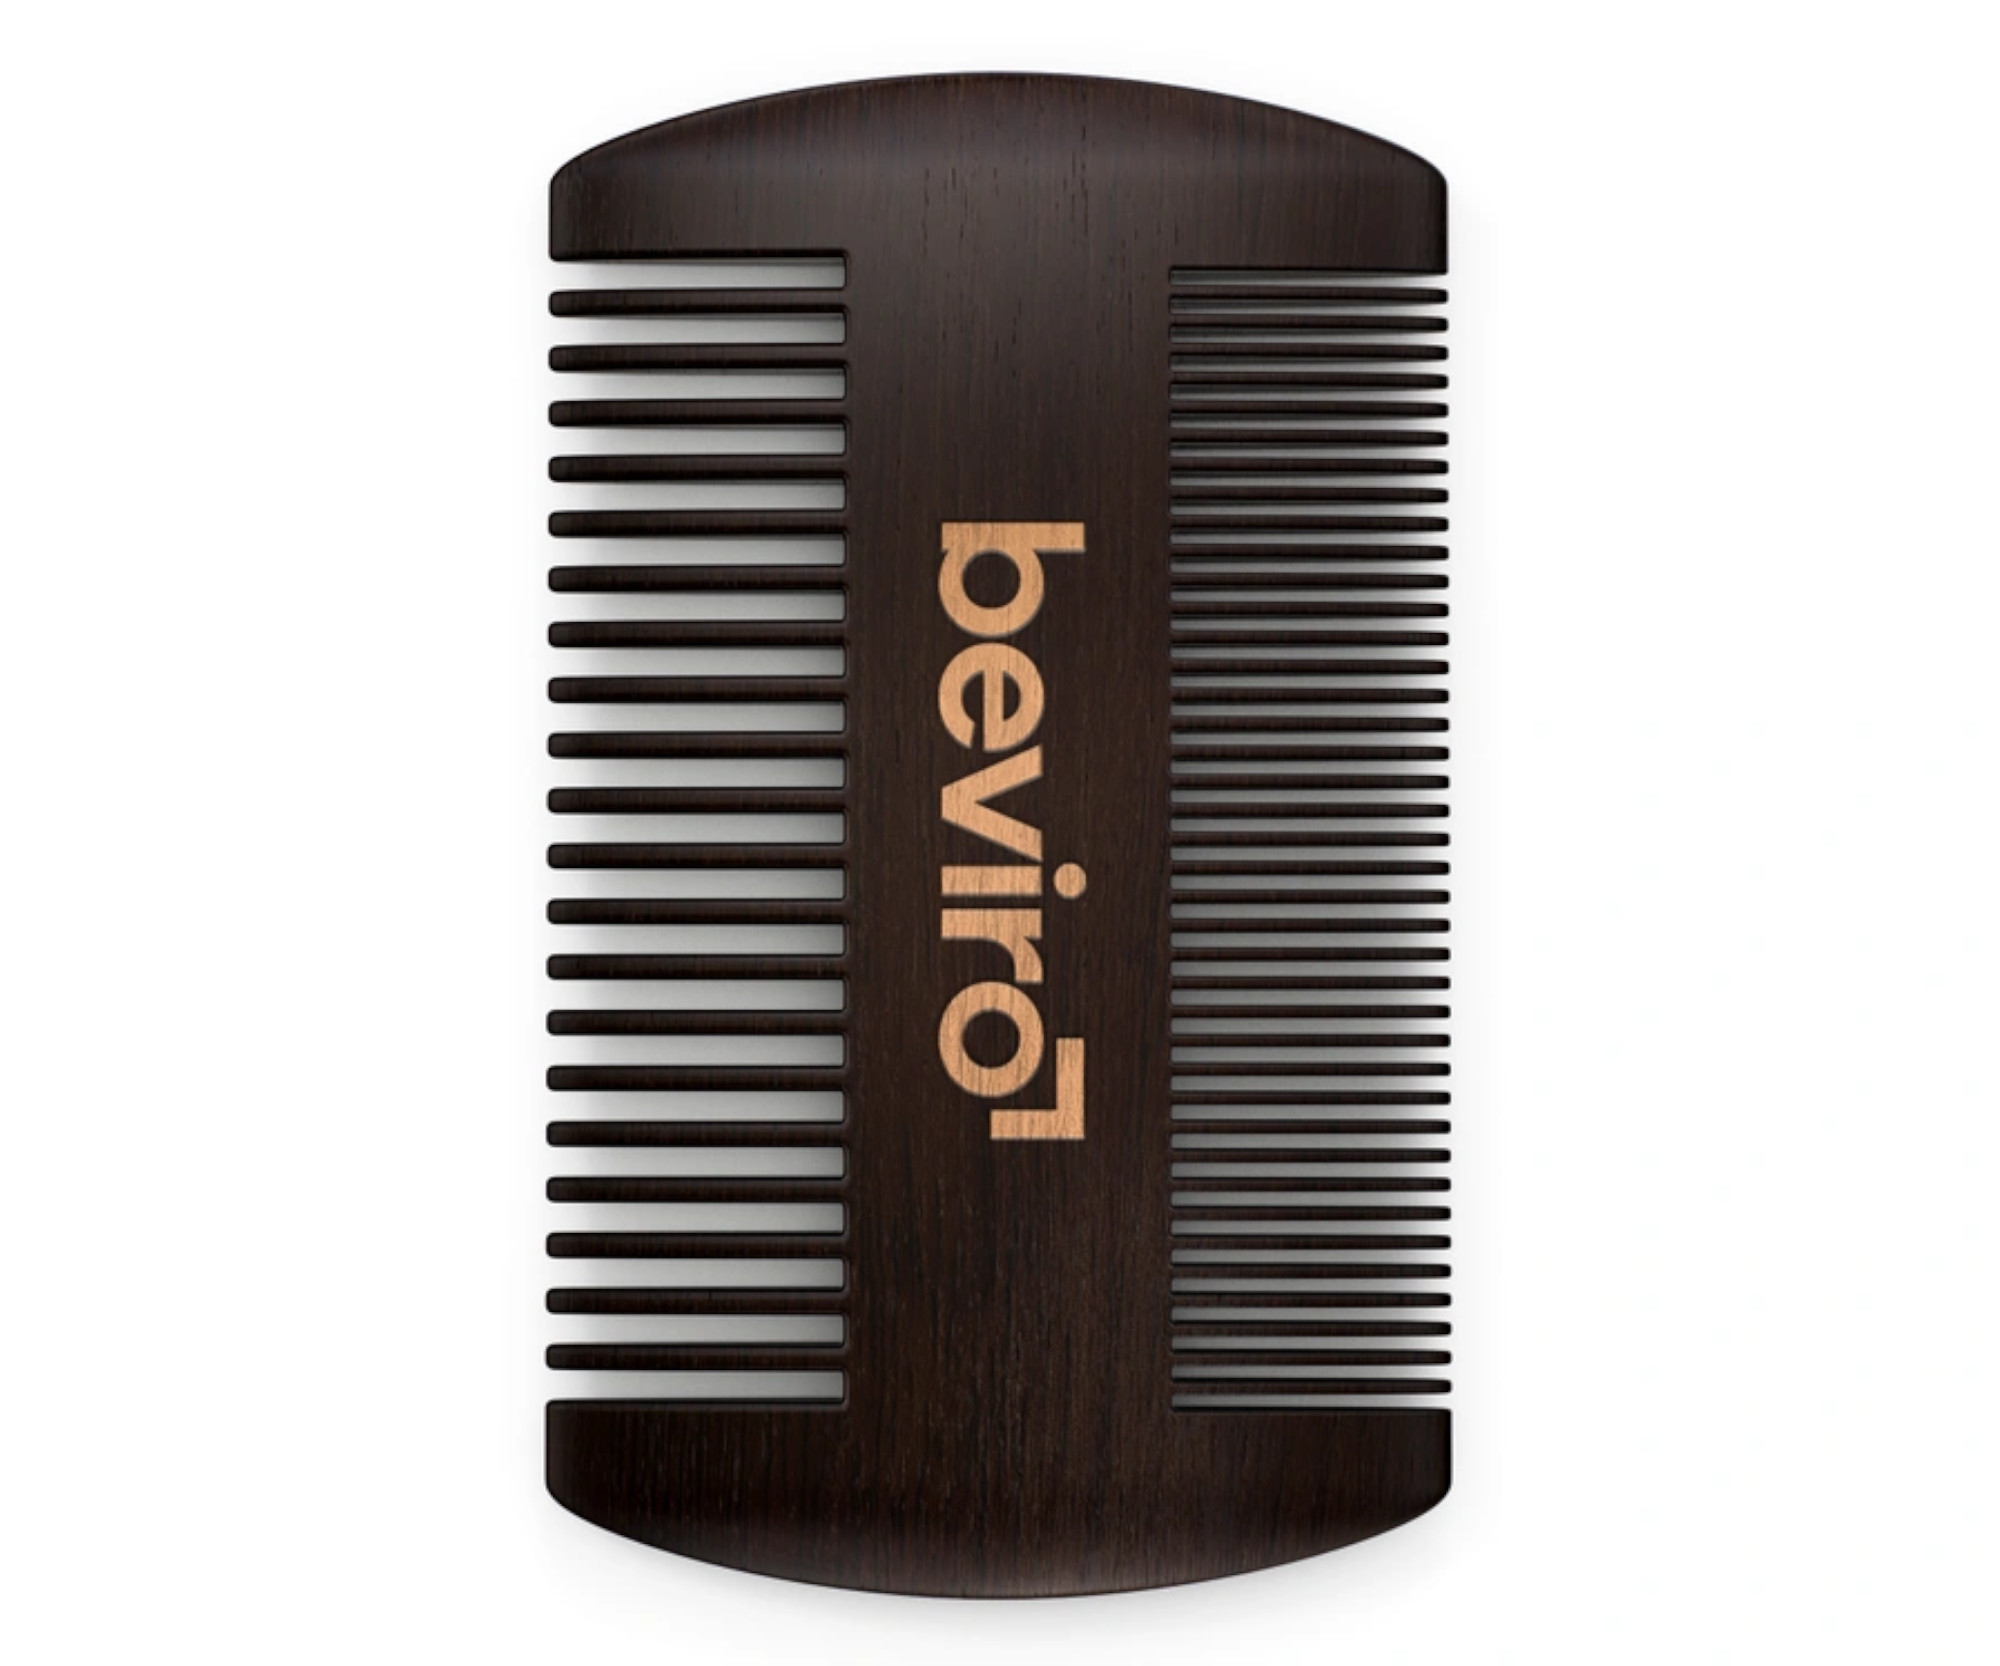 Hřeben na vousy z hruškového dřeva Beviro - 95 x 55 mm (TO015) + dárek zdarma